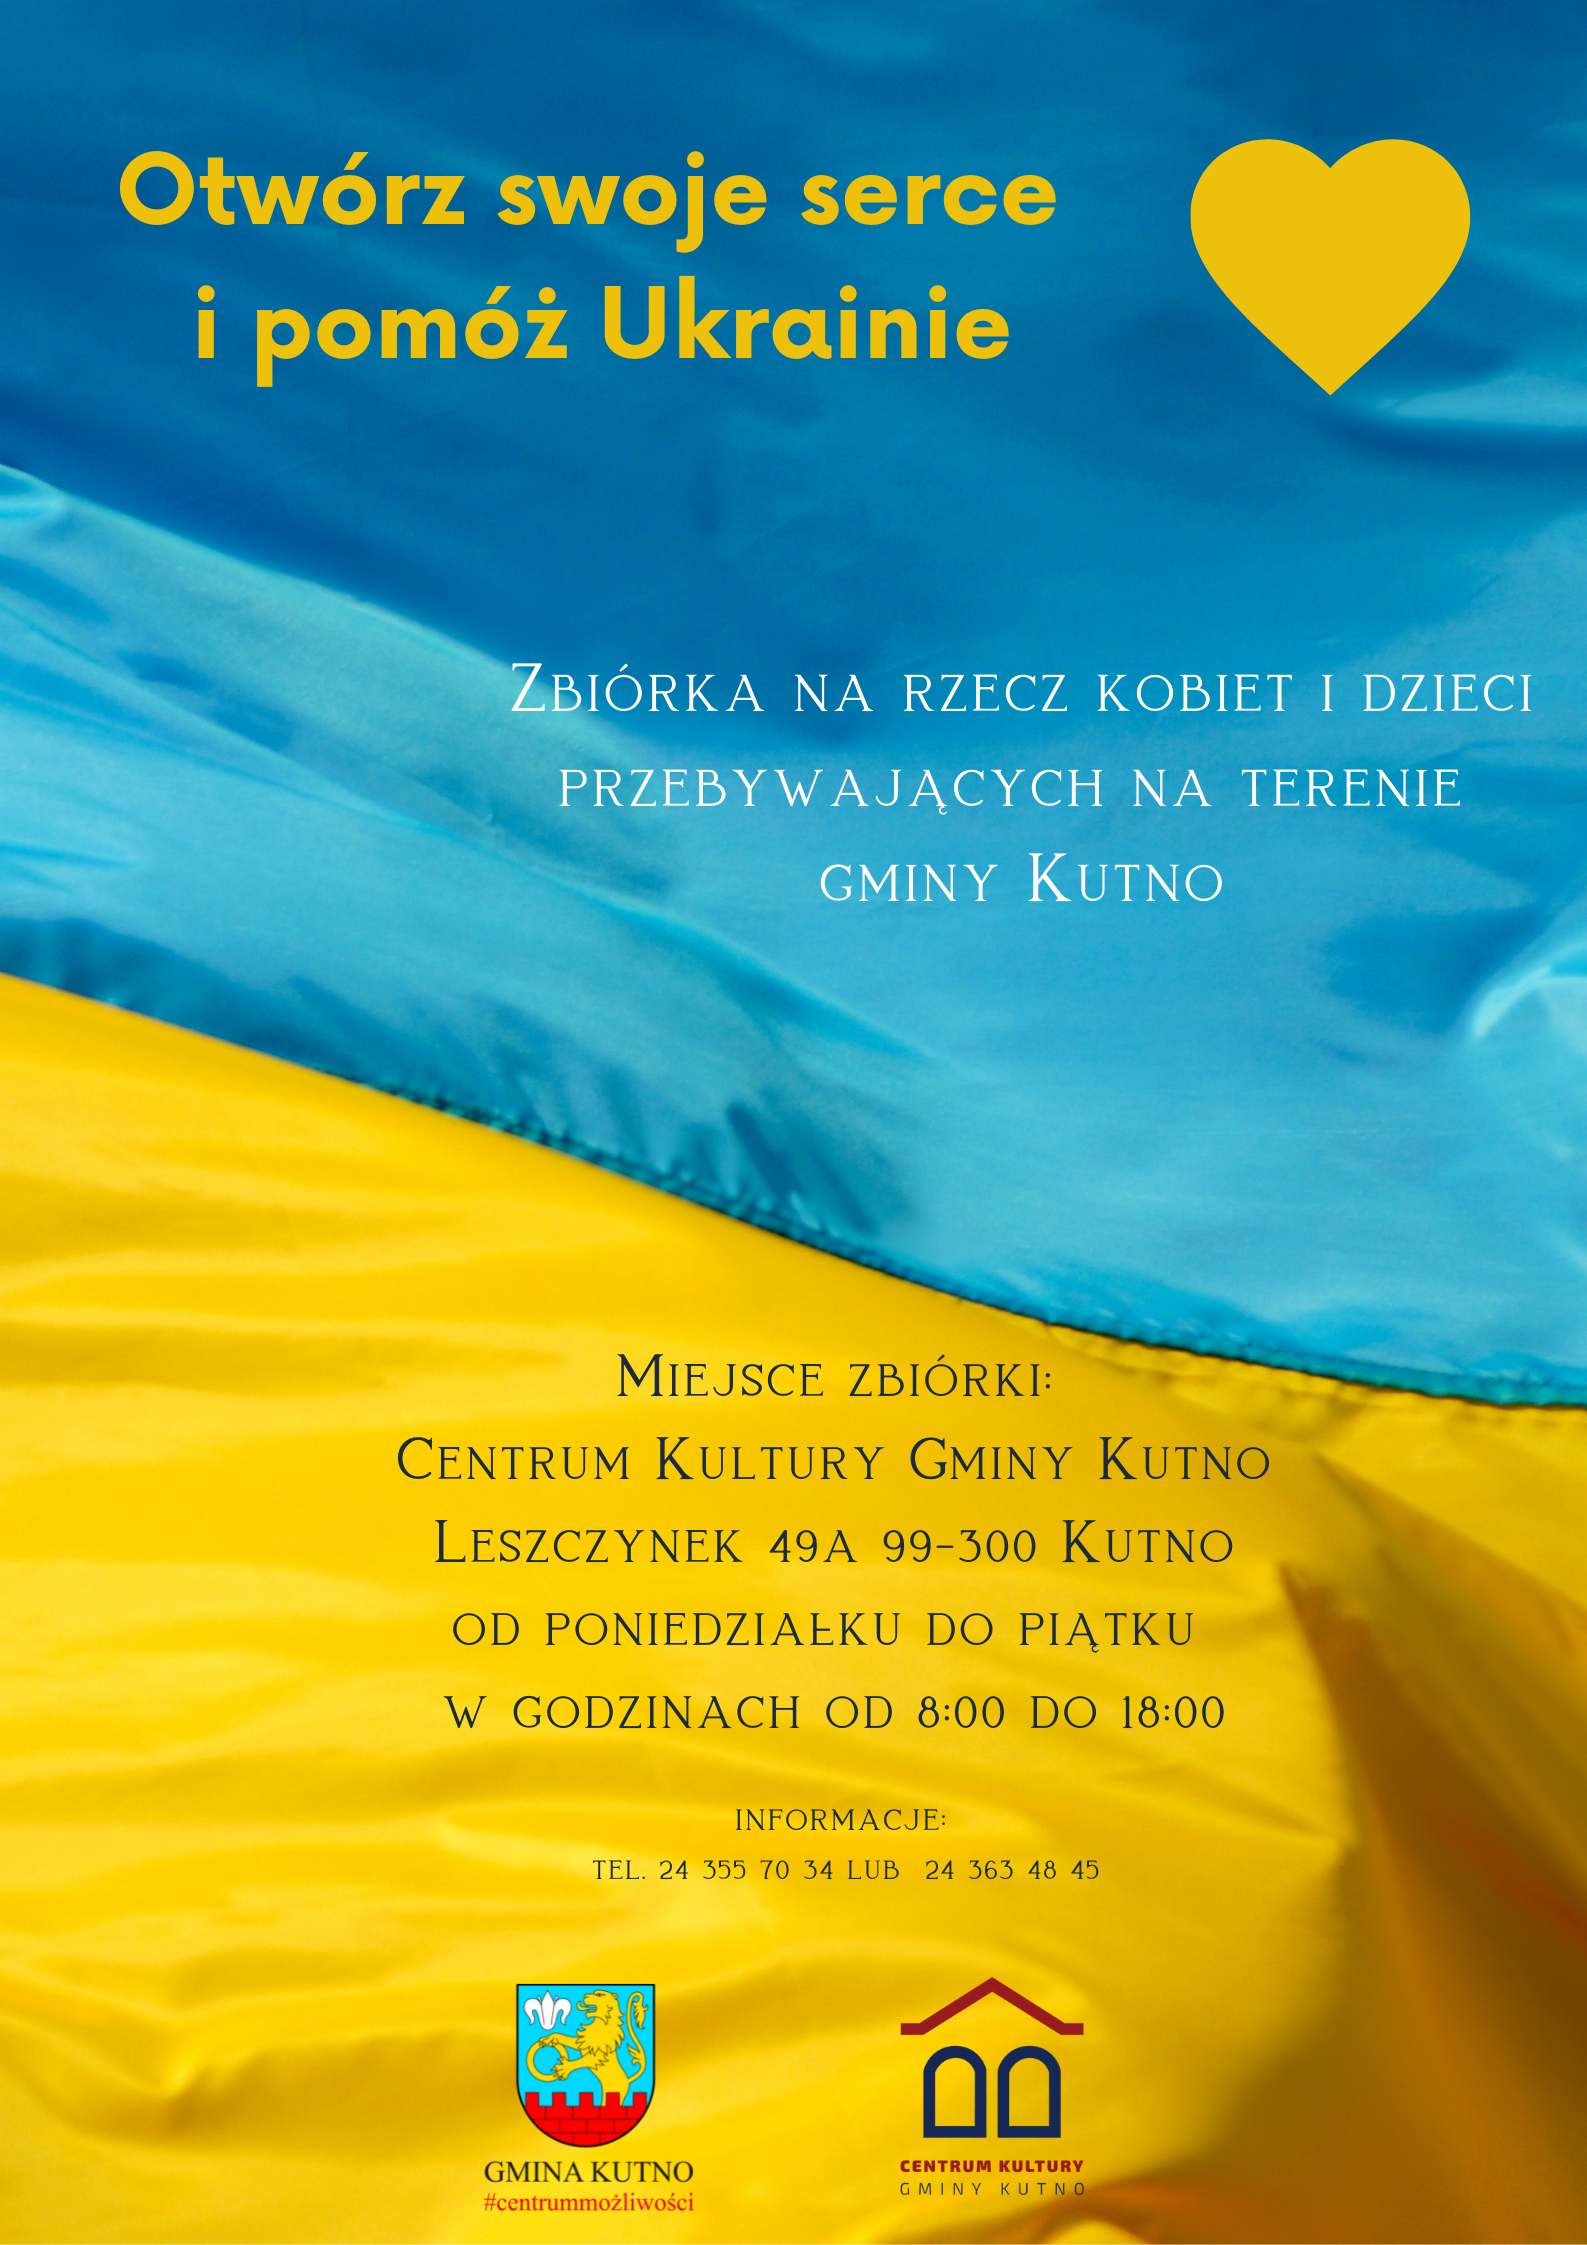 Ukrainian Independence Day Instagram Post Plakat